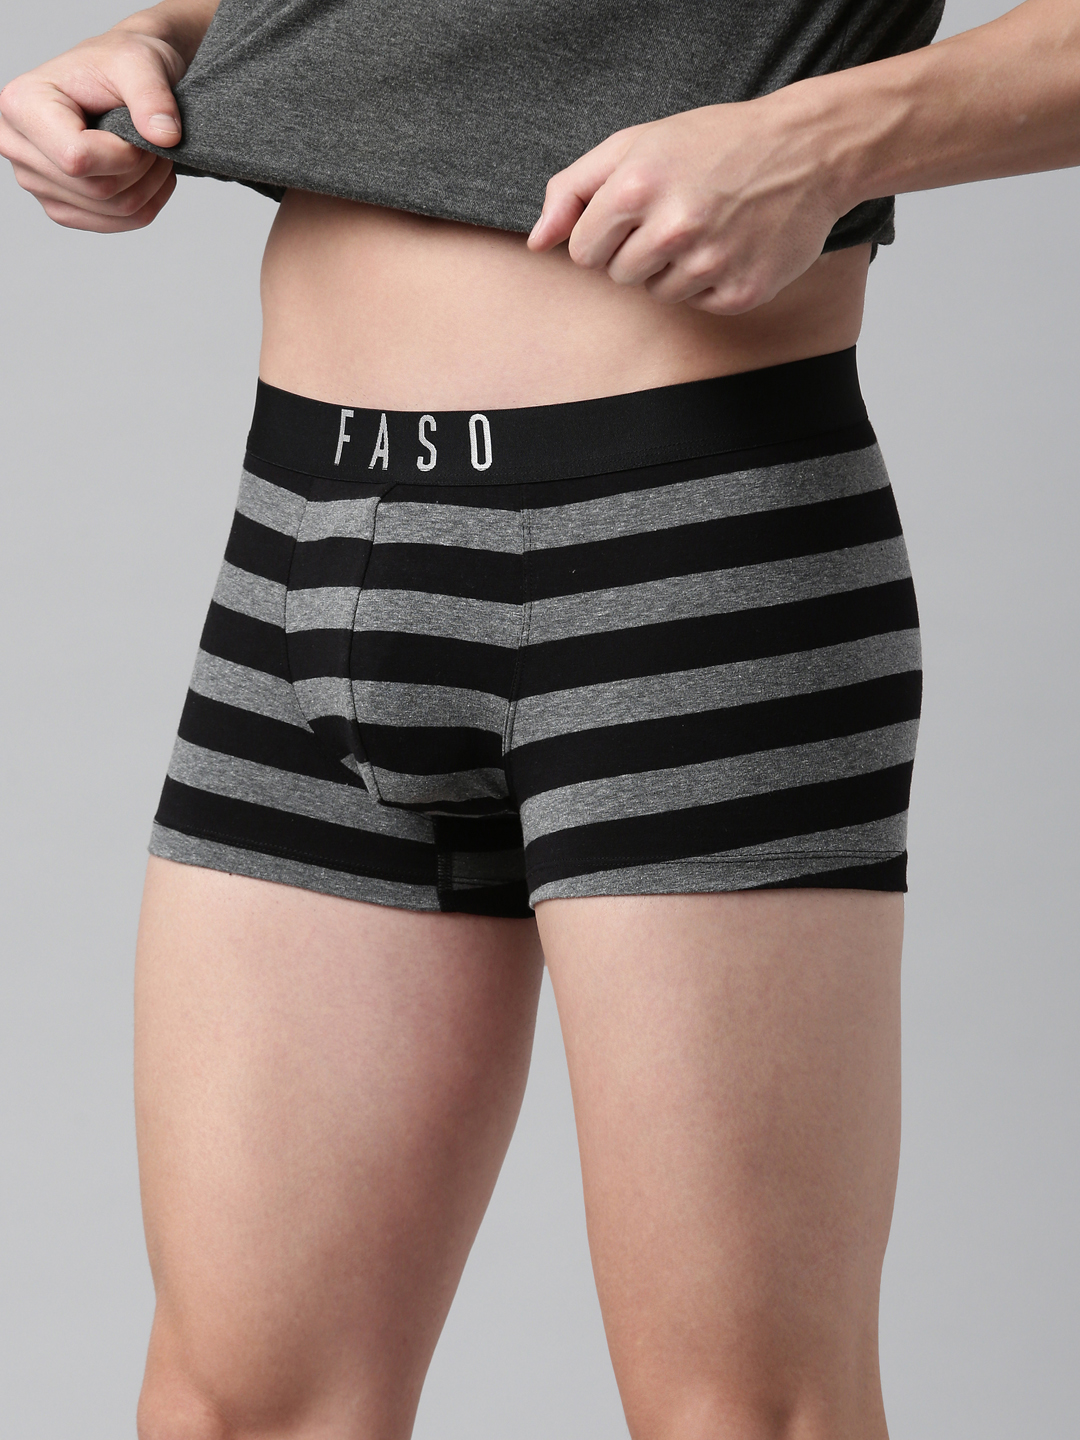 FASO Sporty Multicolor Stripes Cotton Trunk - FS2007